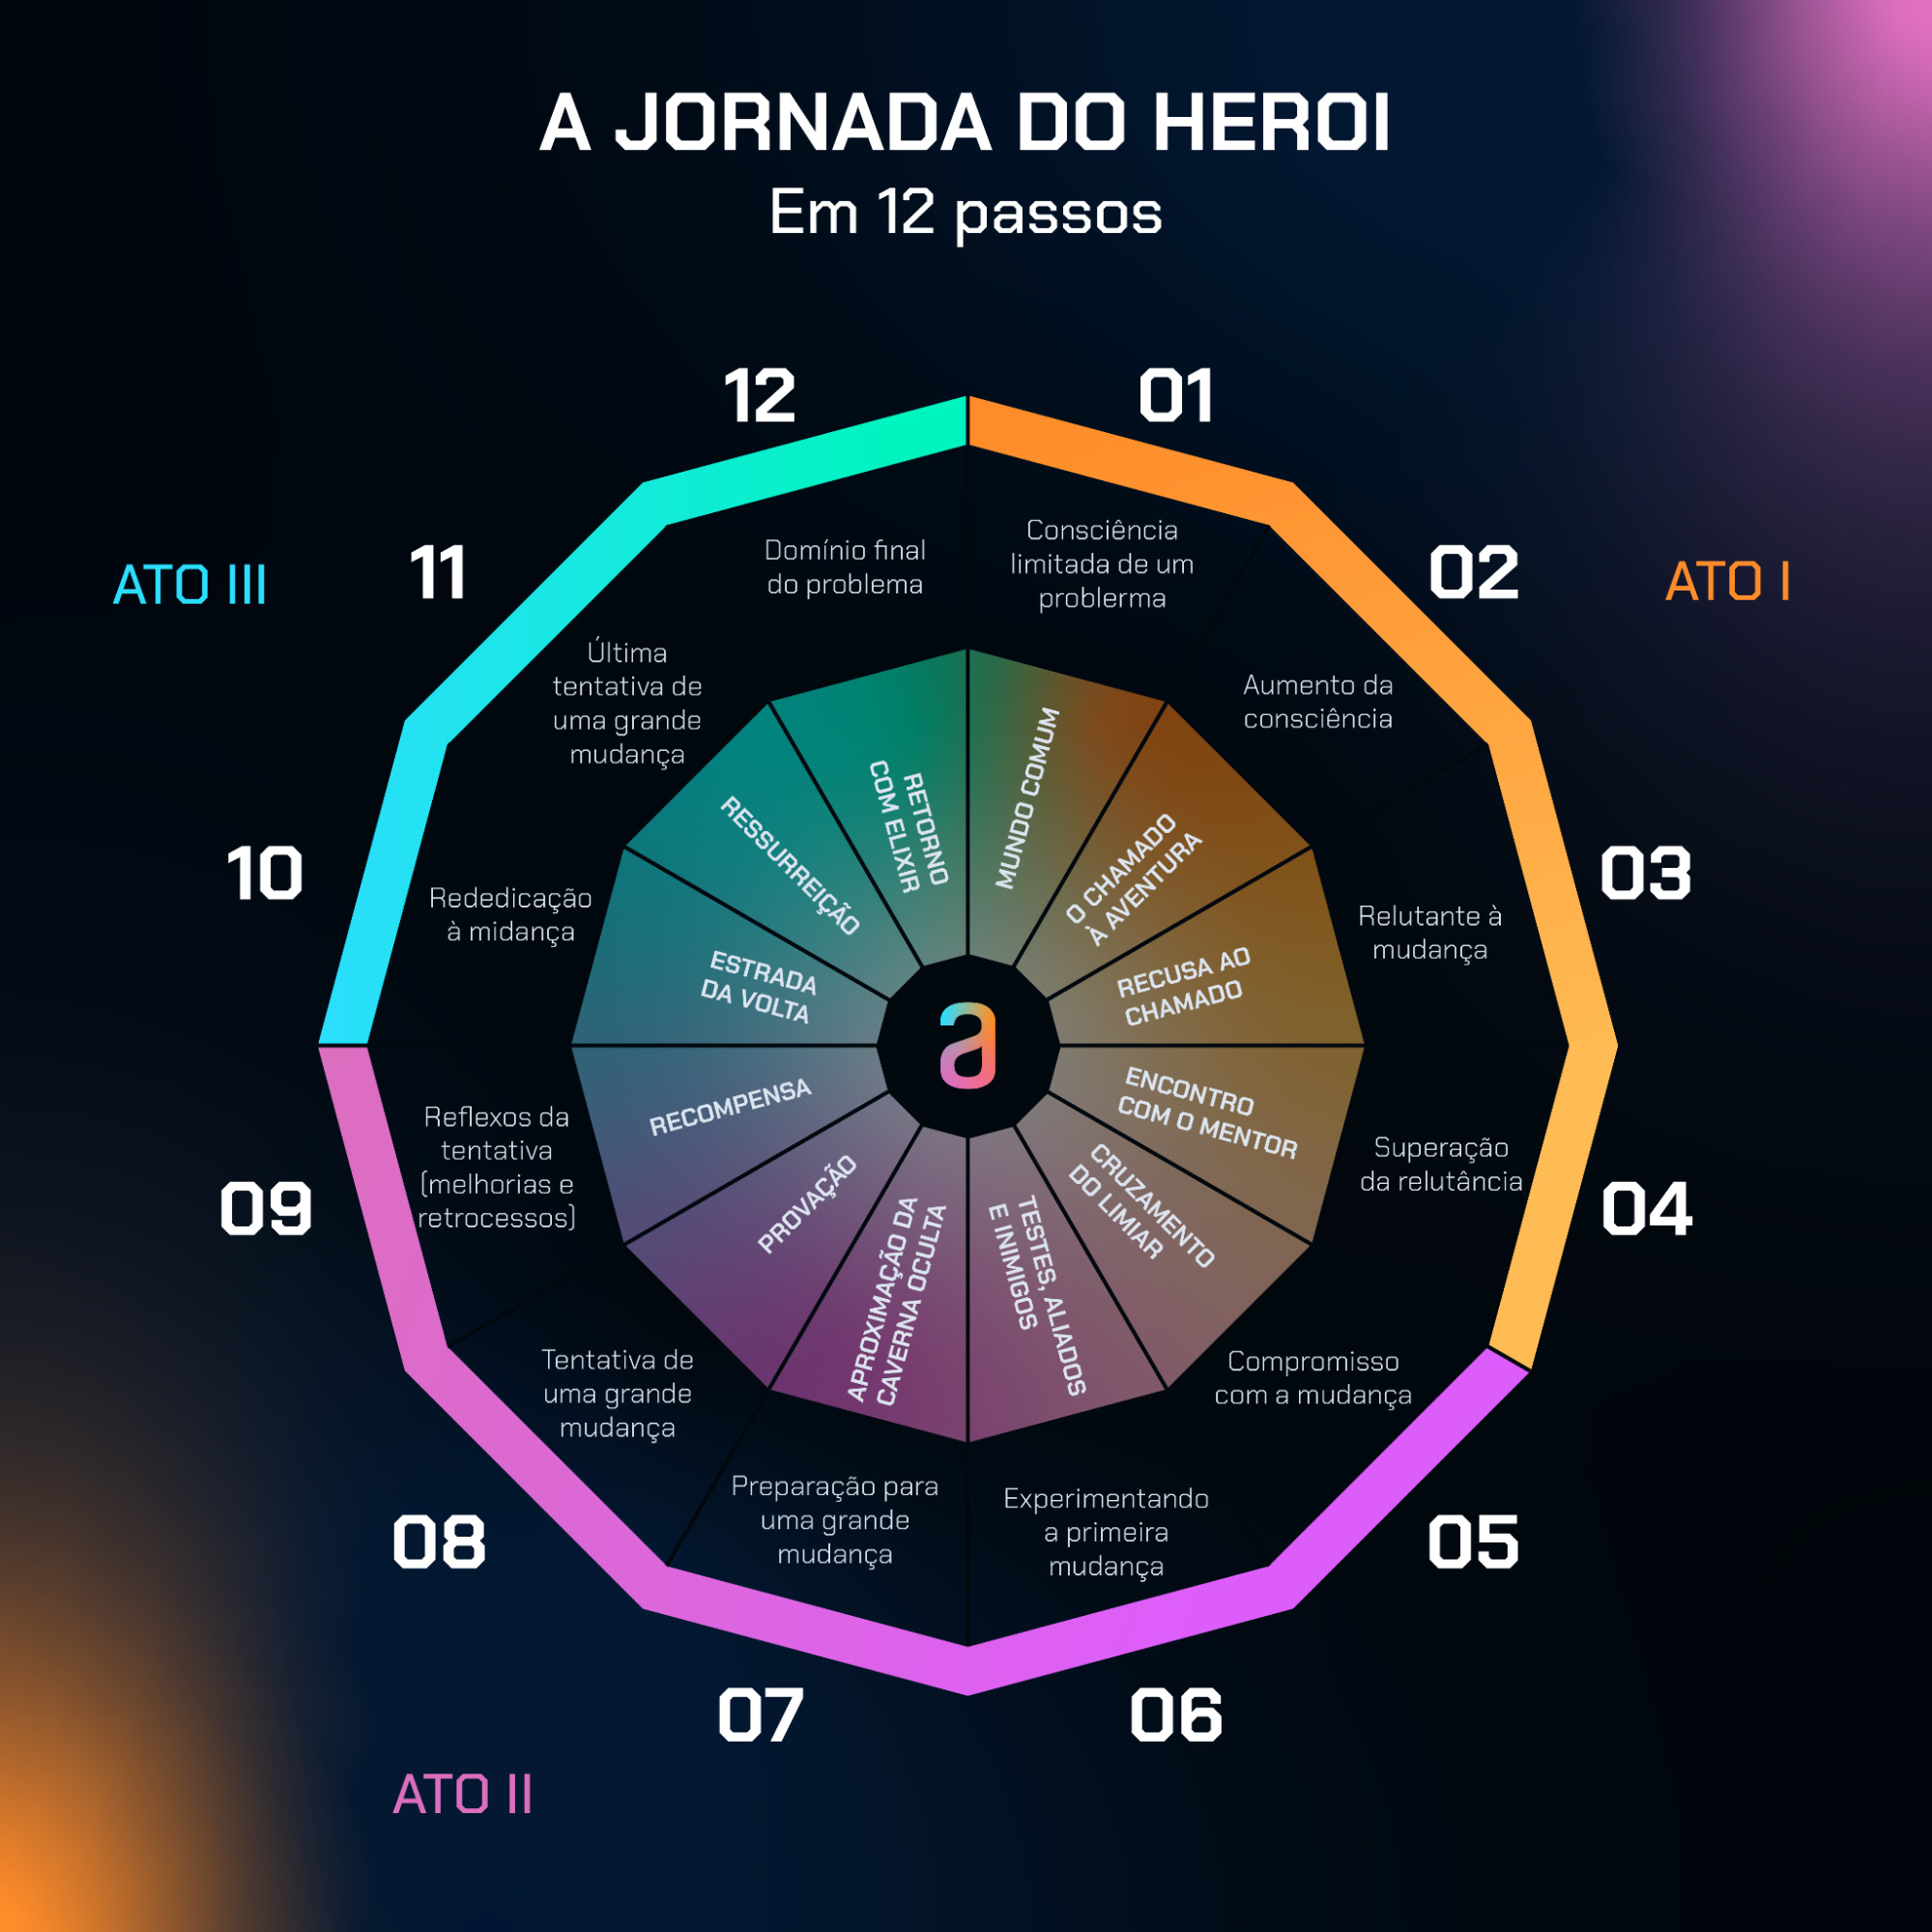 Imagem ilustrativa da Jornada do Herói em 12 passos.